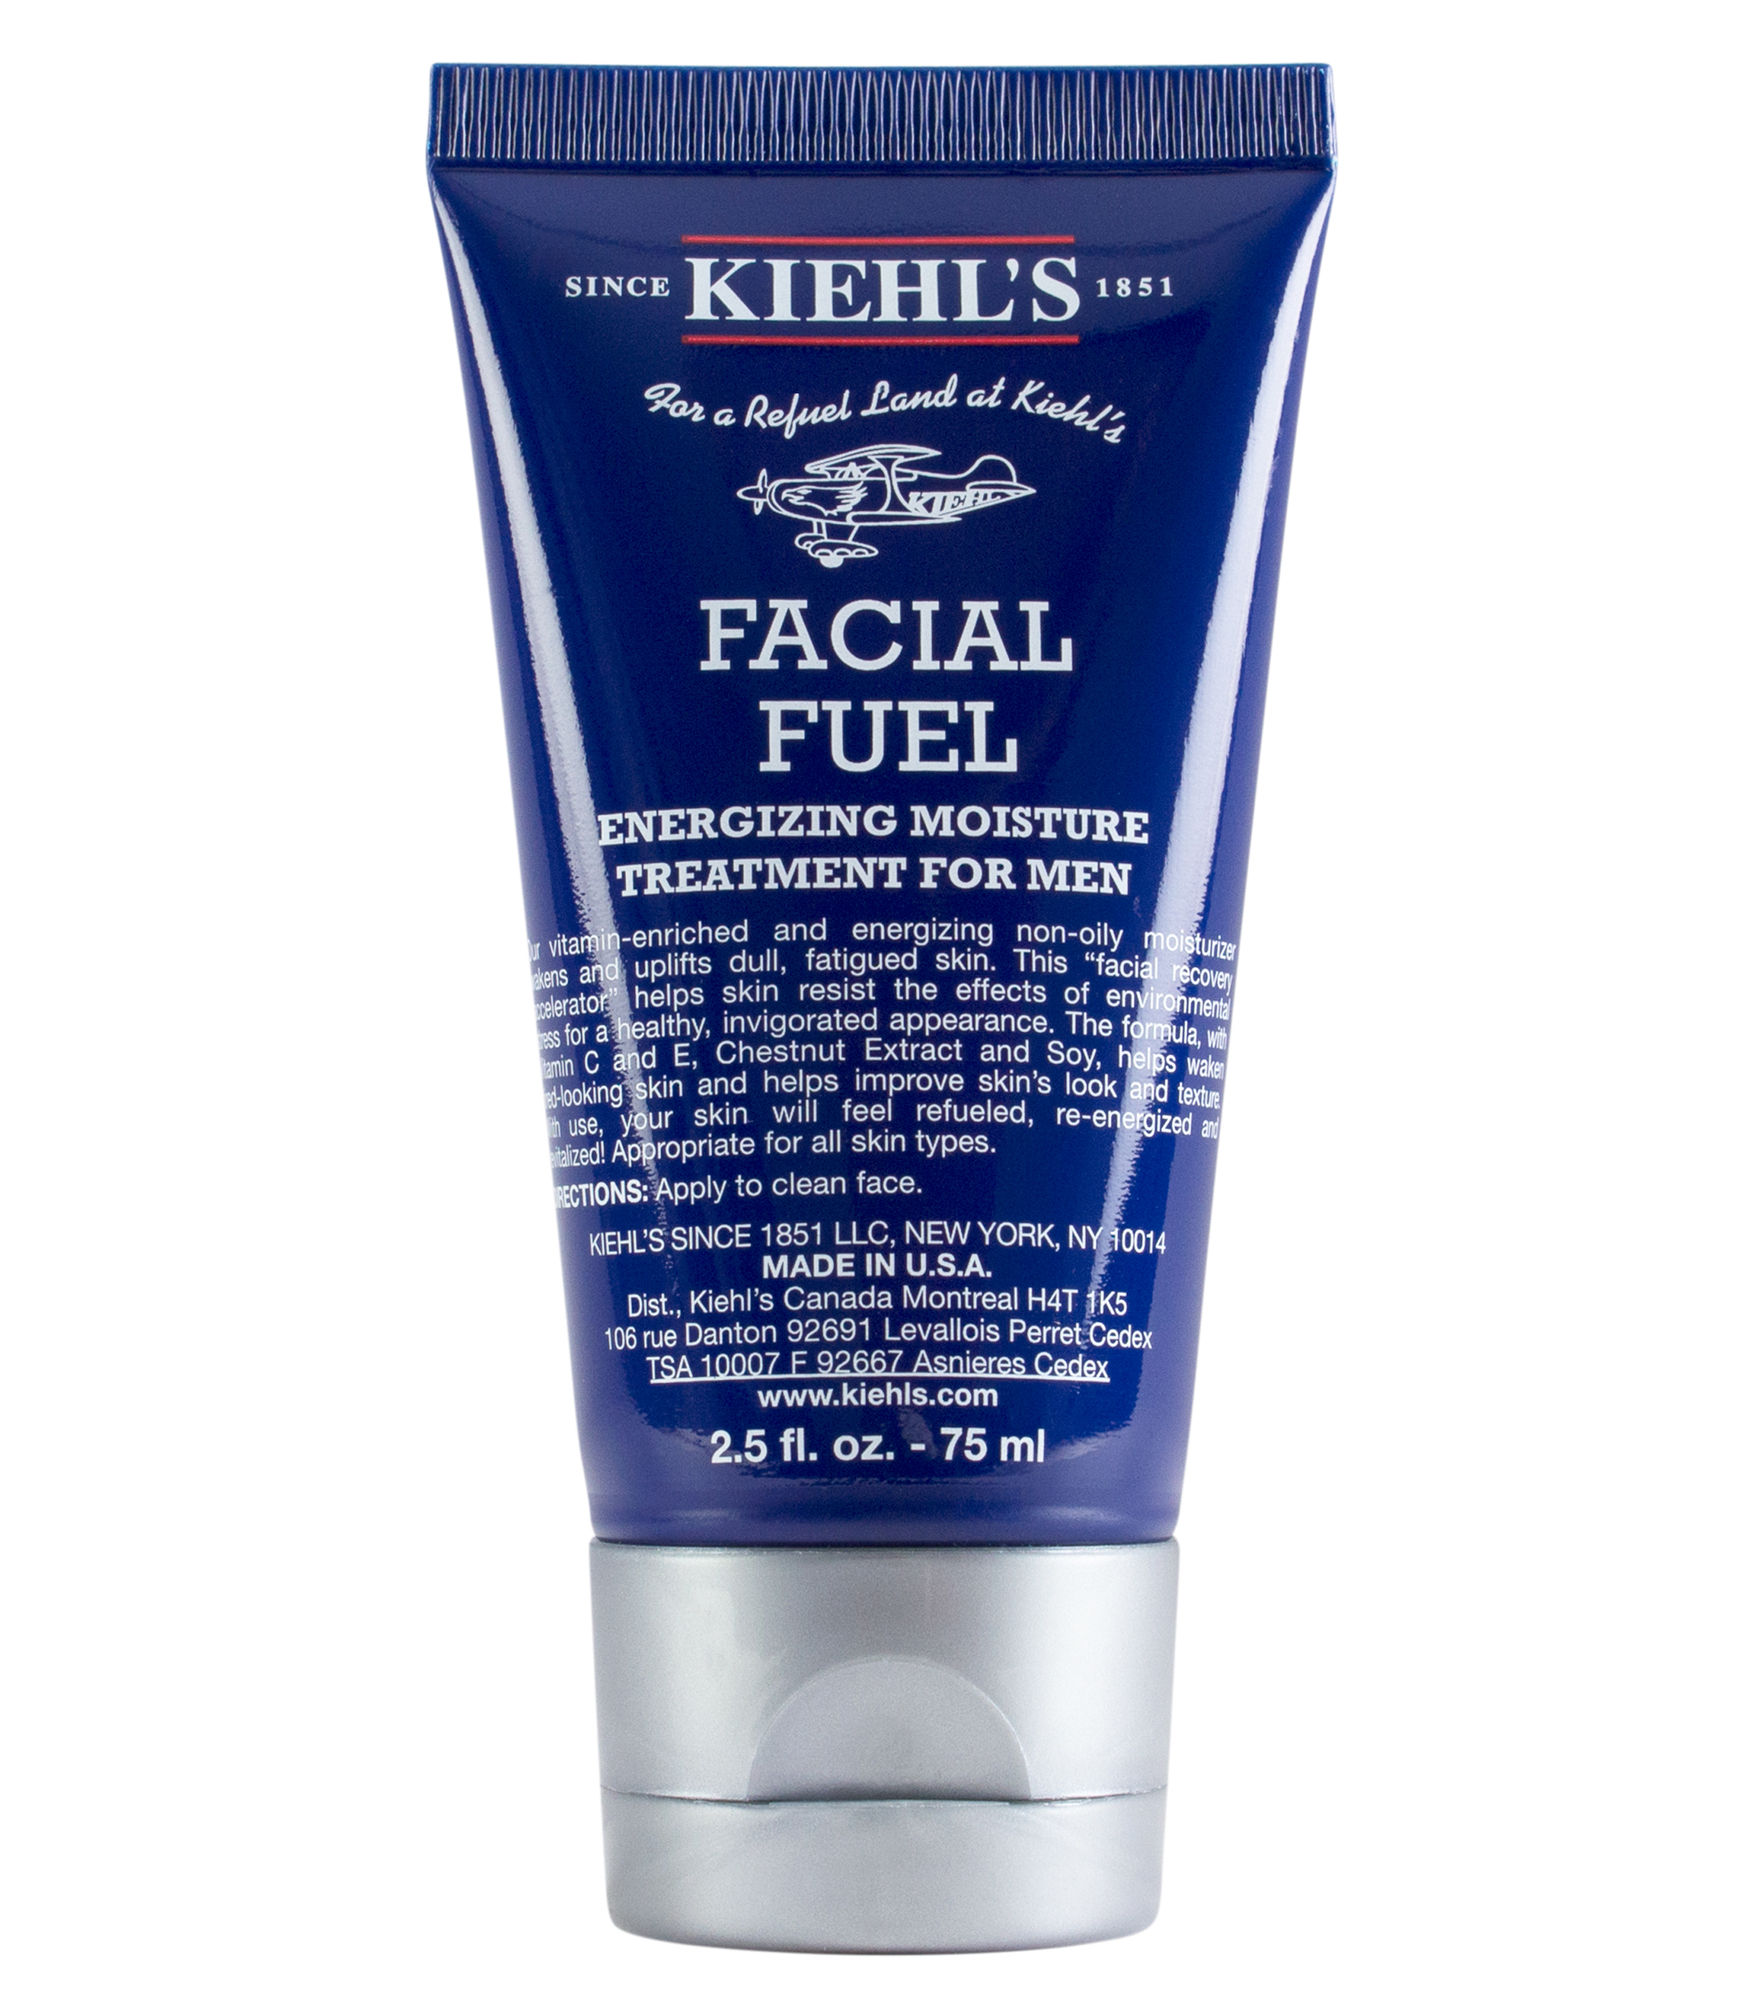 Kiehls Facial Fuel Energizing Moisture Treatment for Men